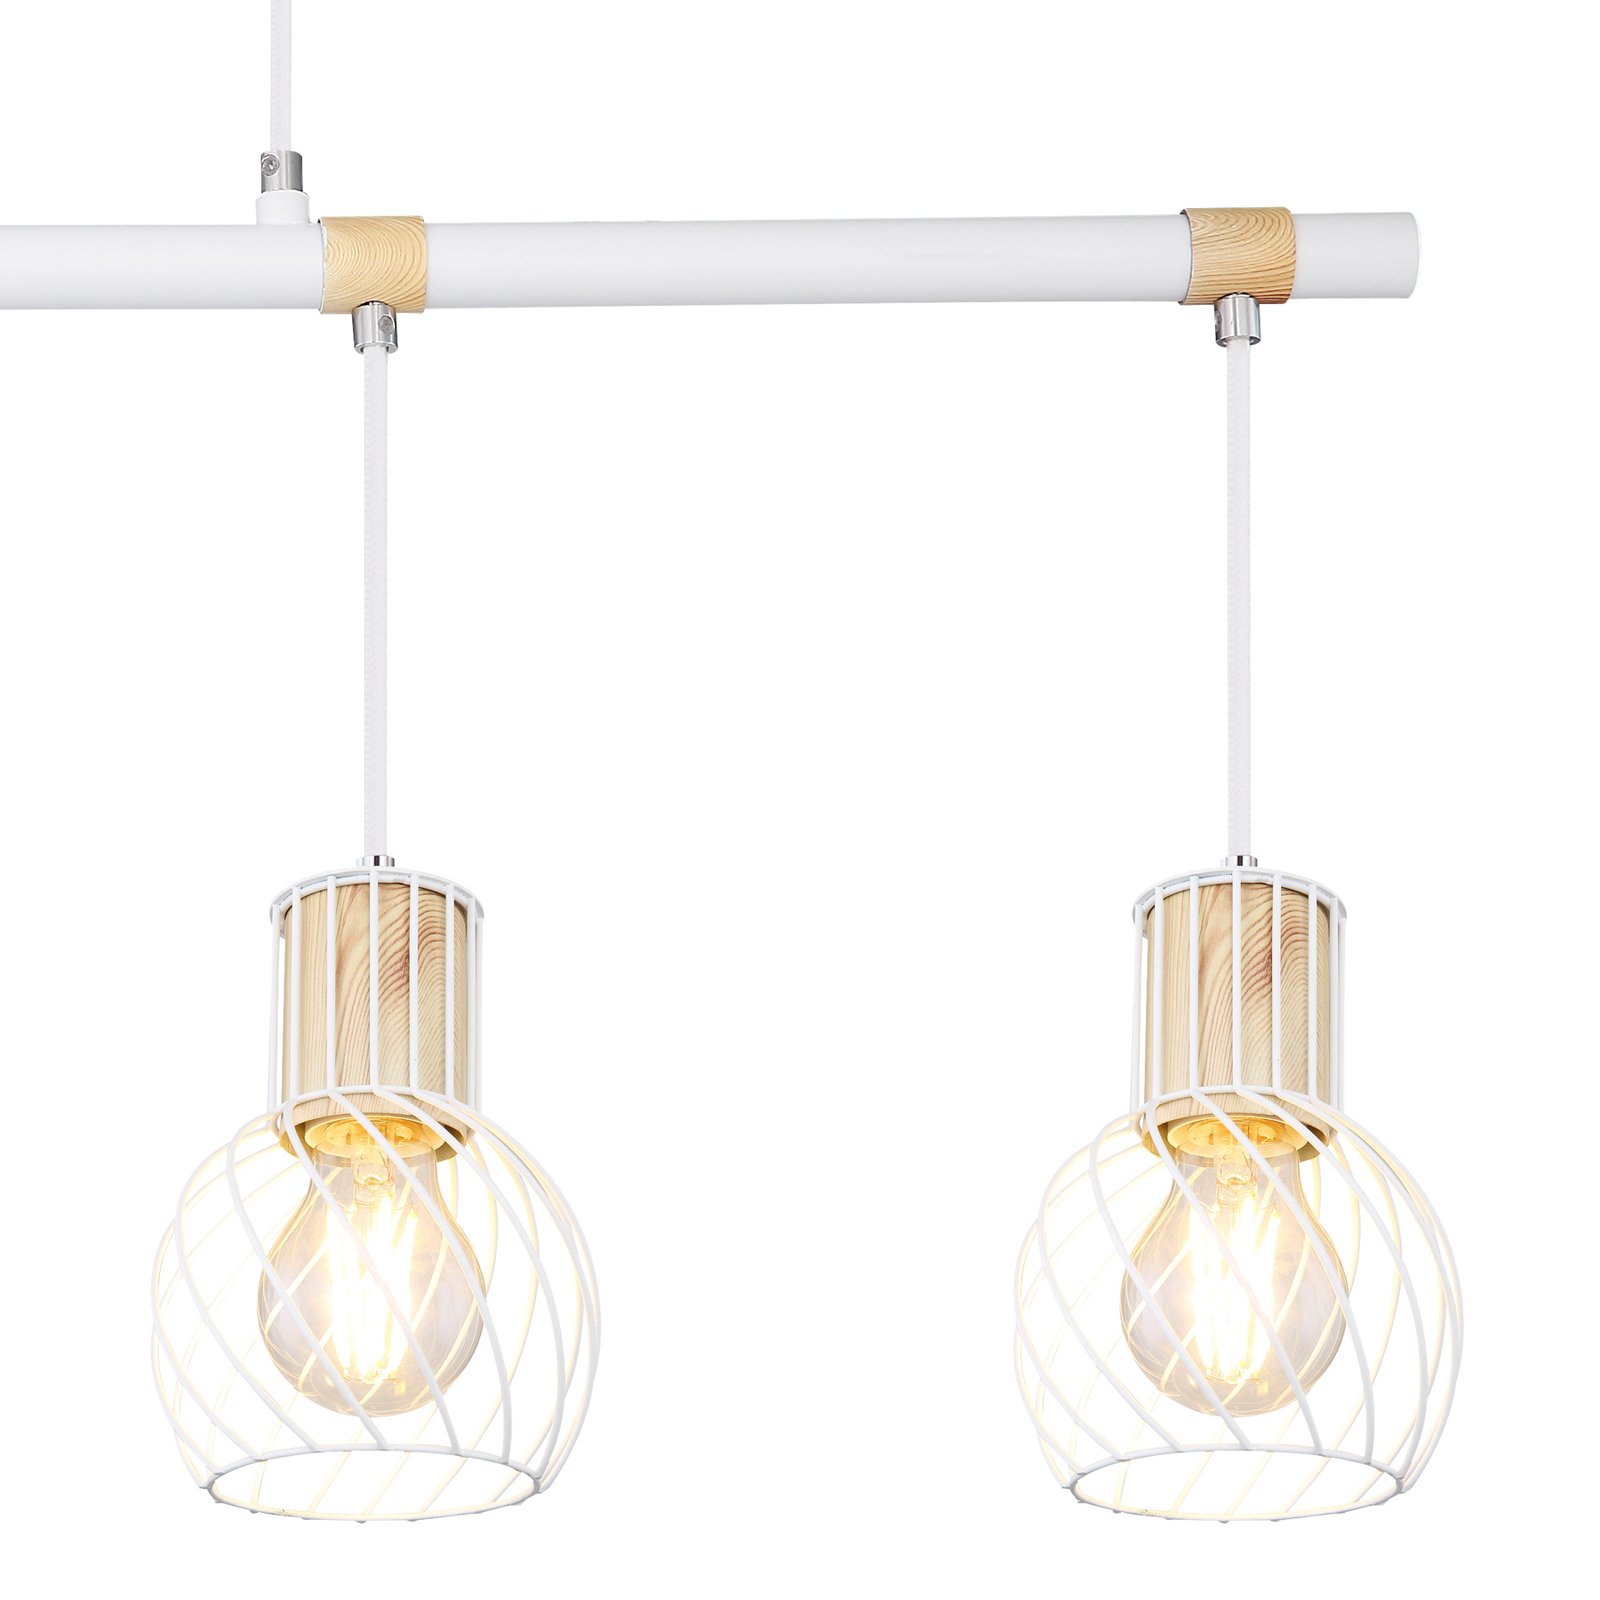 Luise hængelampe i hvid og trælook, 4 lyskilder